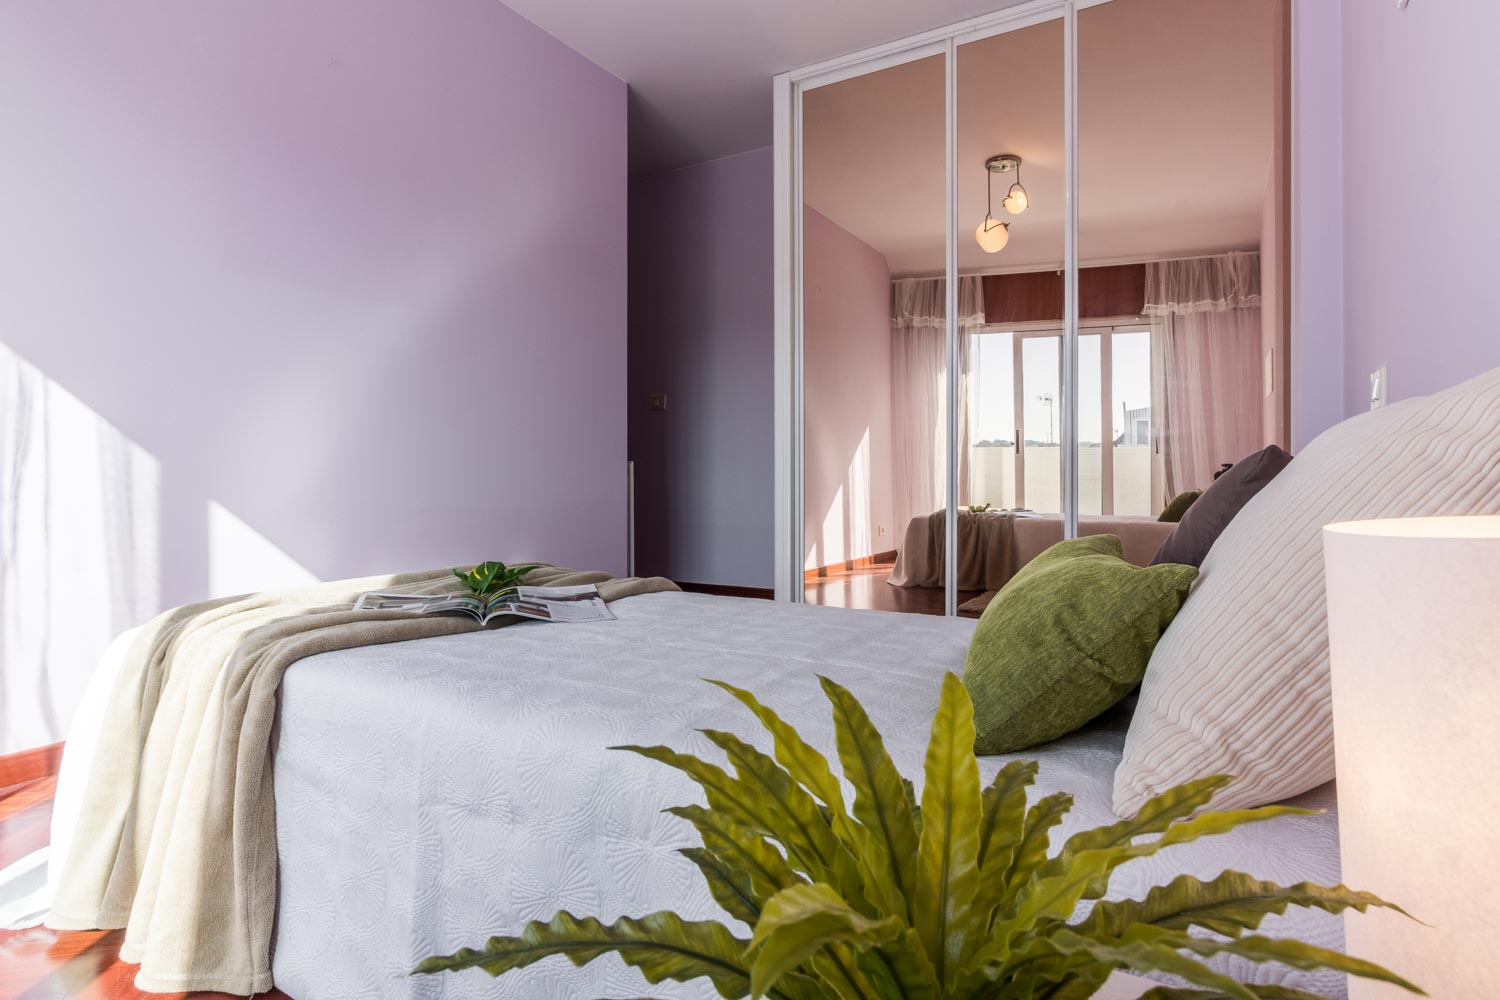 Dormitorio morado decorado con tonos neutros verdes_ armario empotrado con espejo